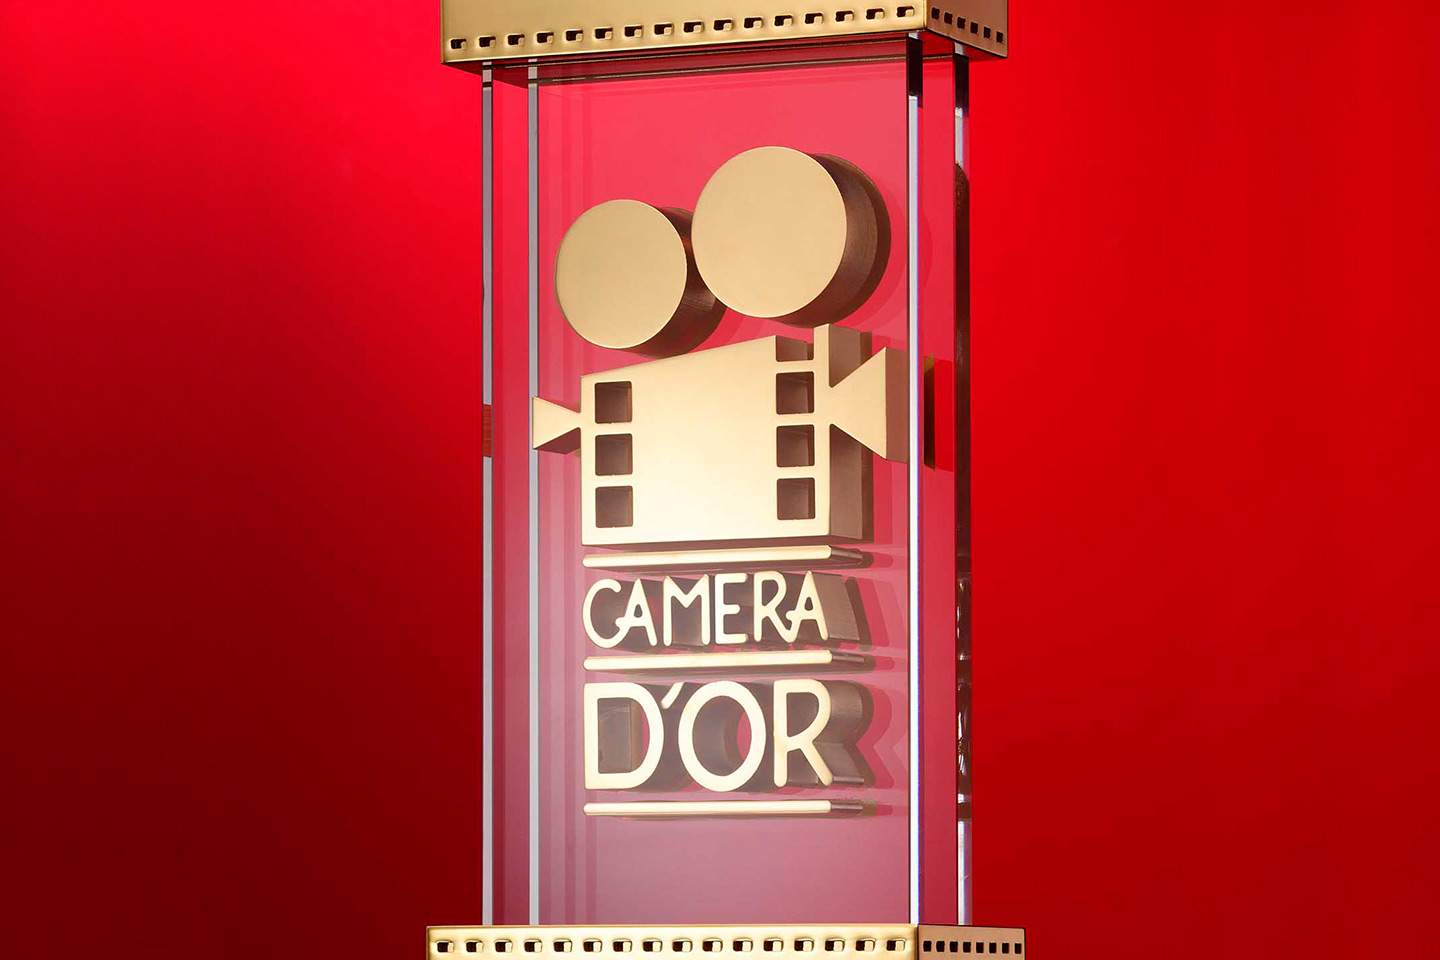 Prix de la Caméra d'or à Cannes, un bref historique